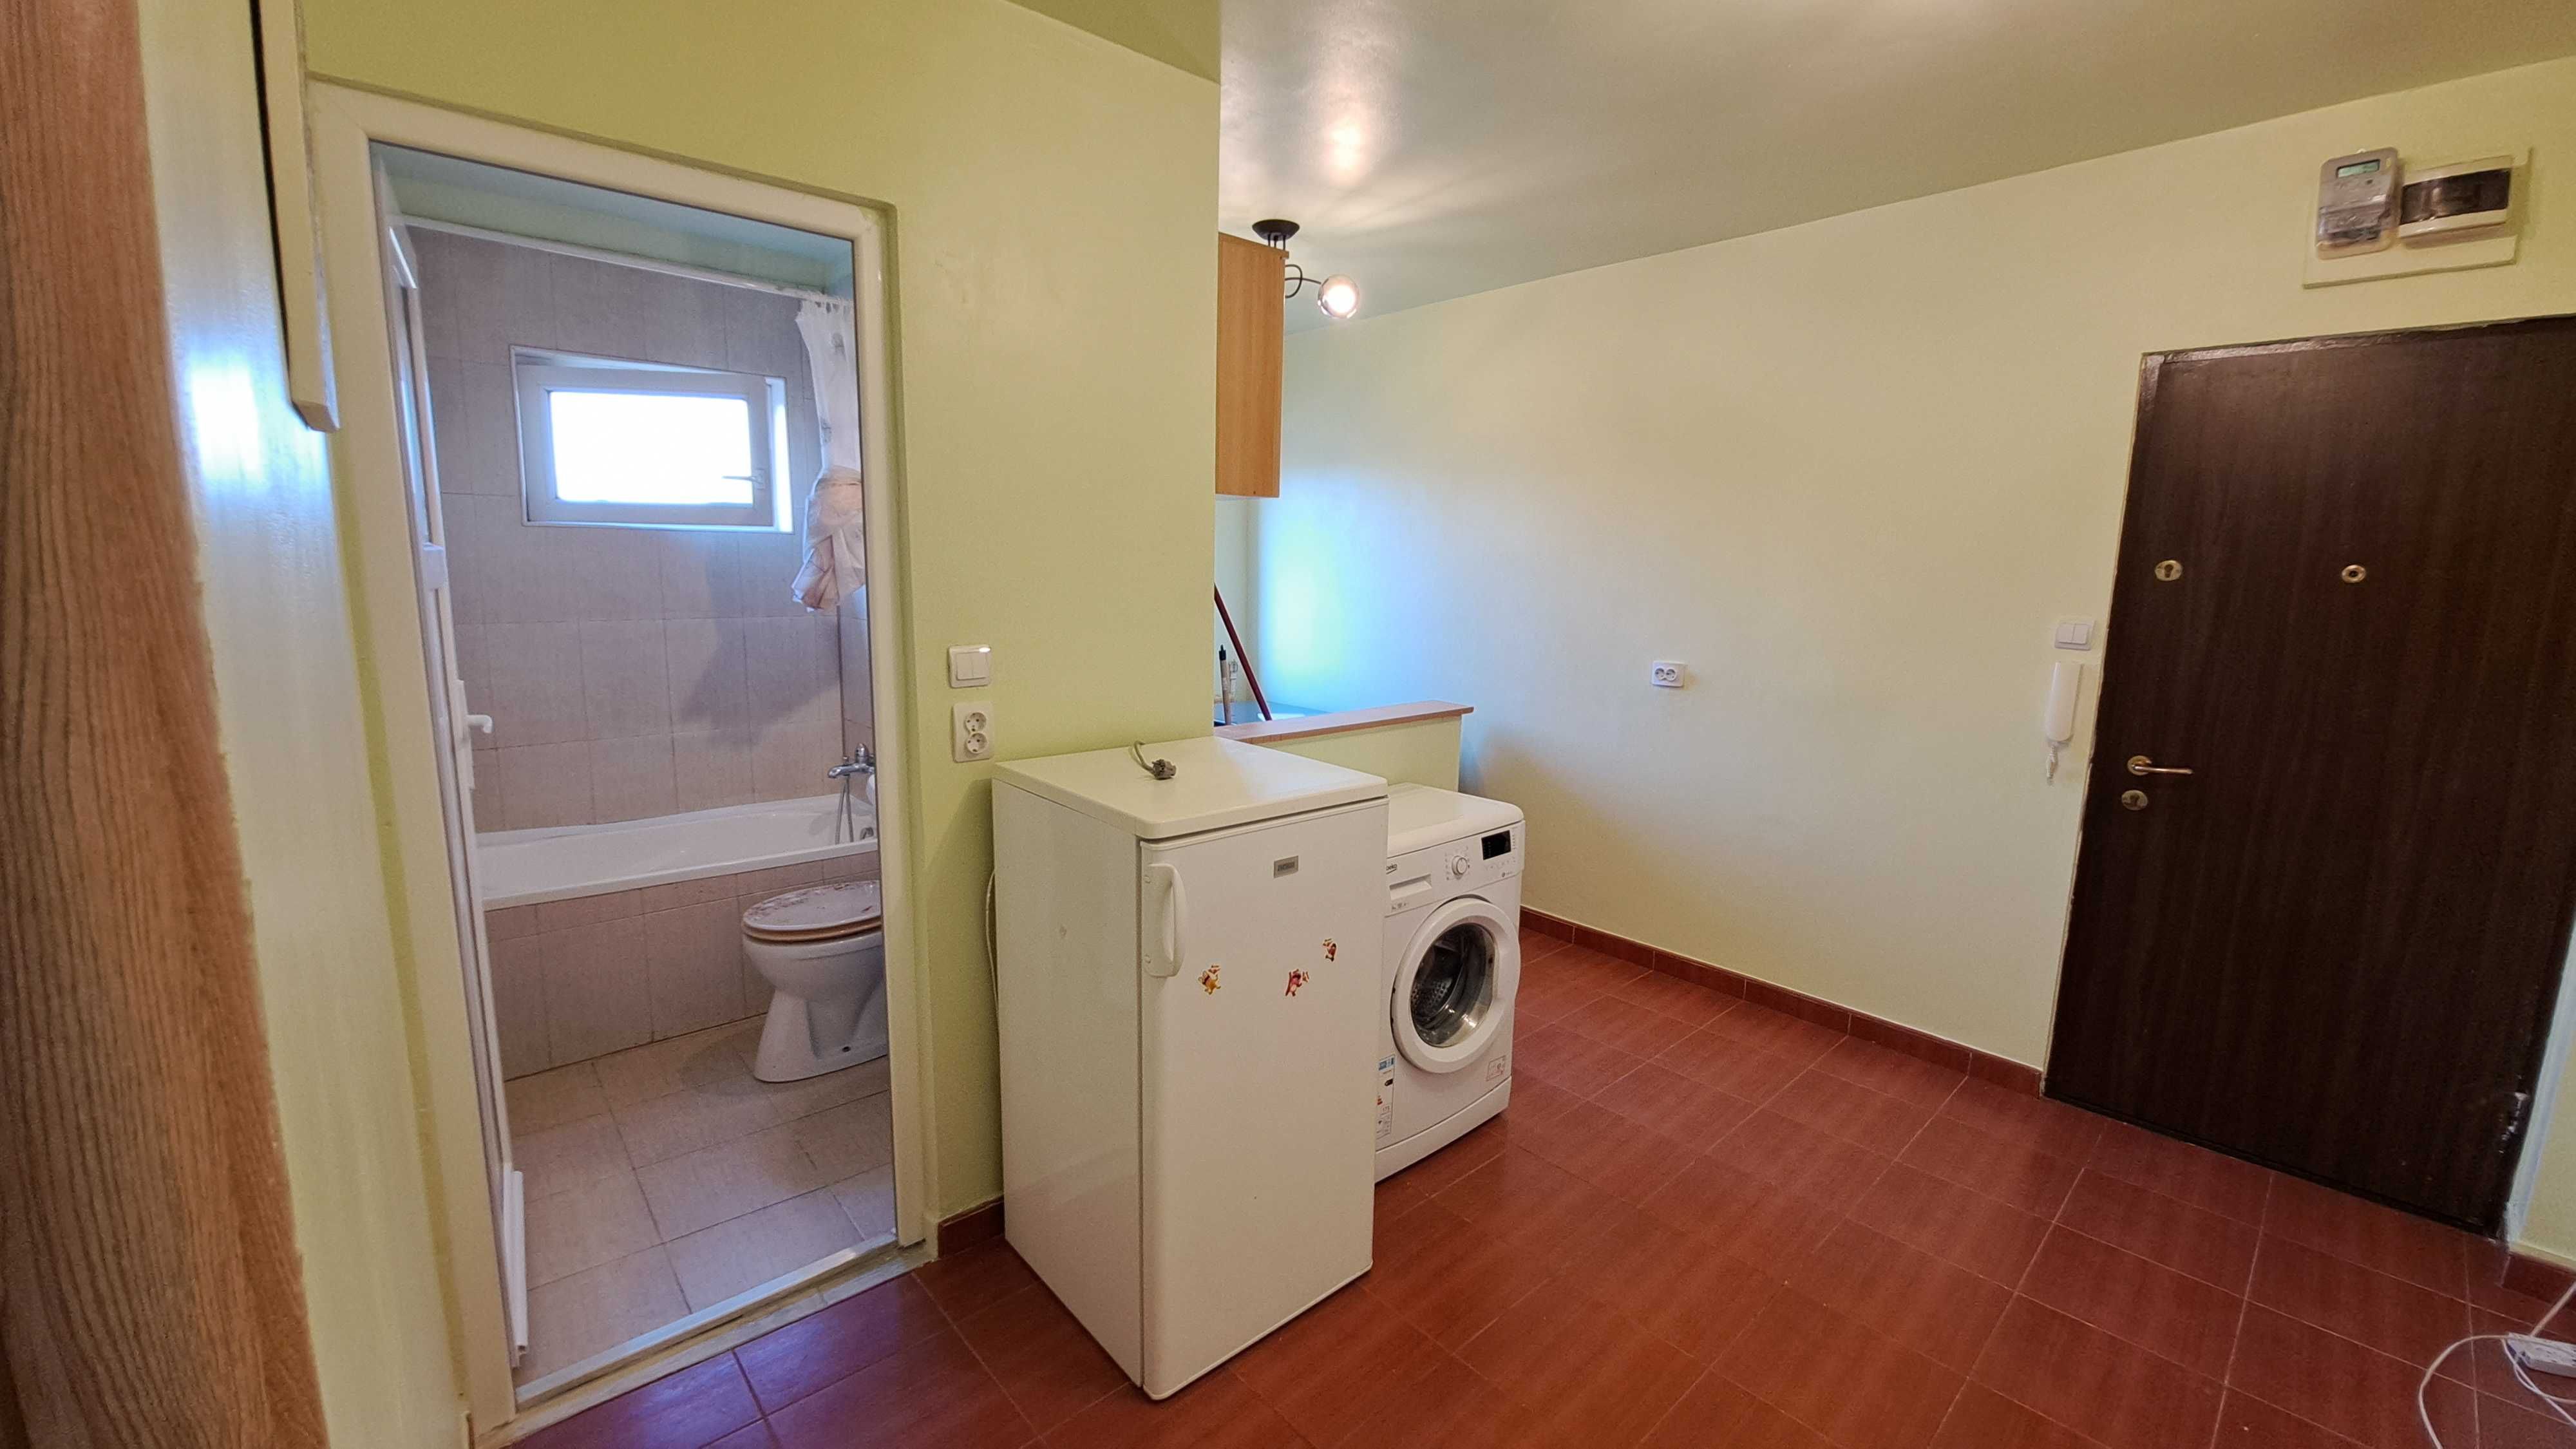 Proprietar inchiriez- Apartament 1 cam, Complex, langa Dinar